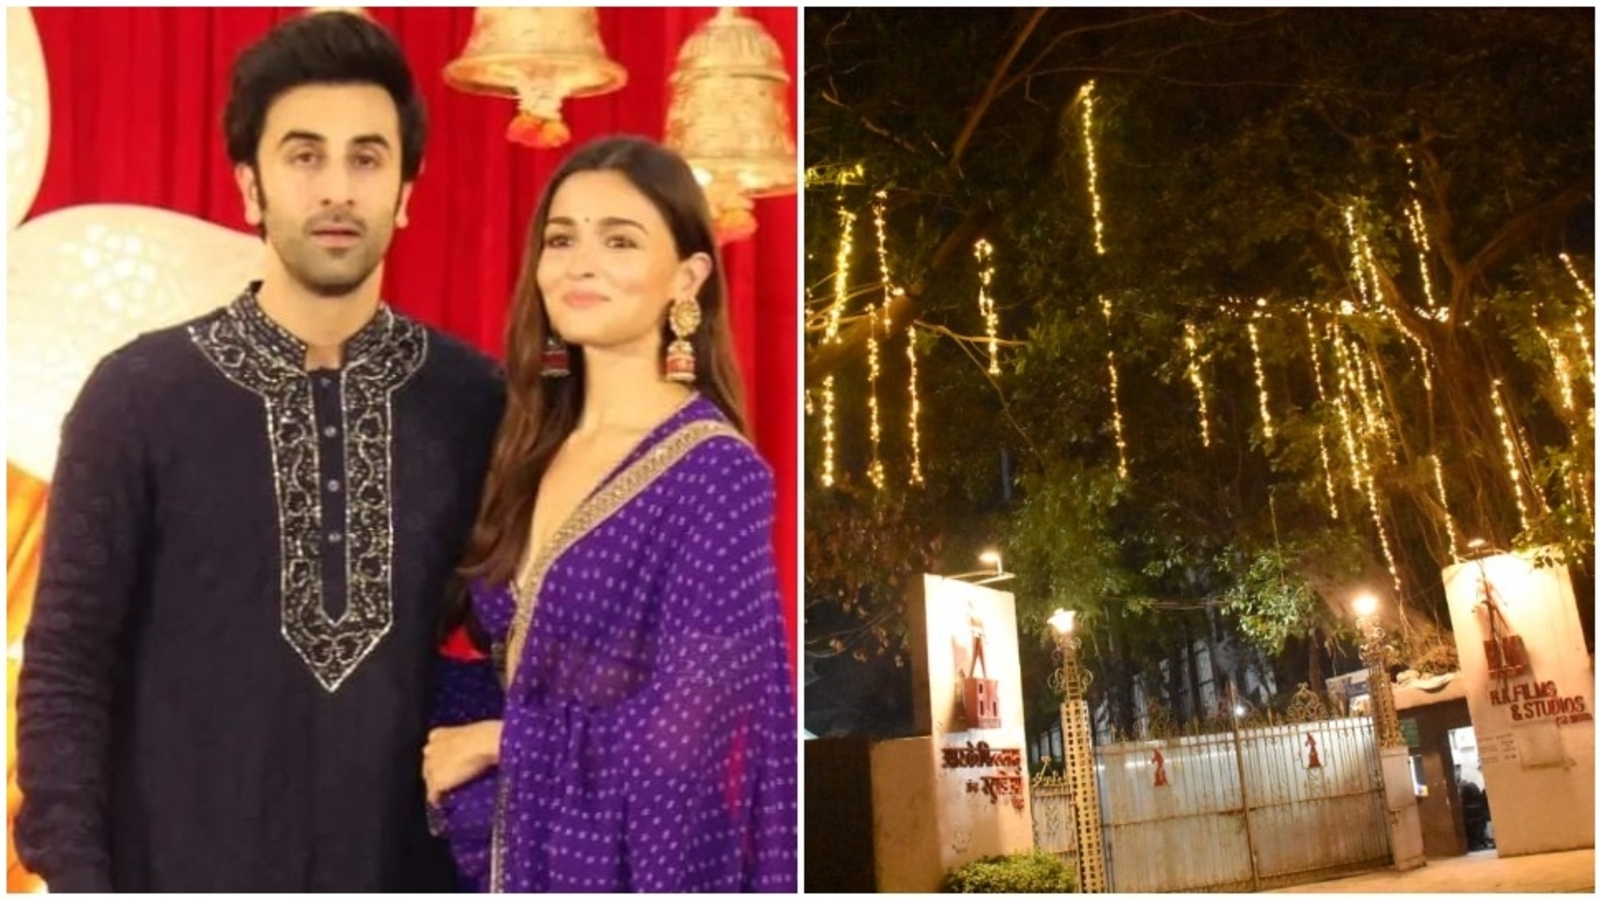 La boda de Ranbir Kapoor y Alia Bhatt: la entrada a RK Studio se iluminó antes de las próximas festividades.  Reloj |  Bollywood